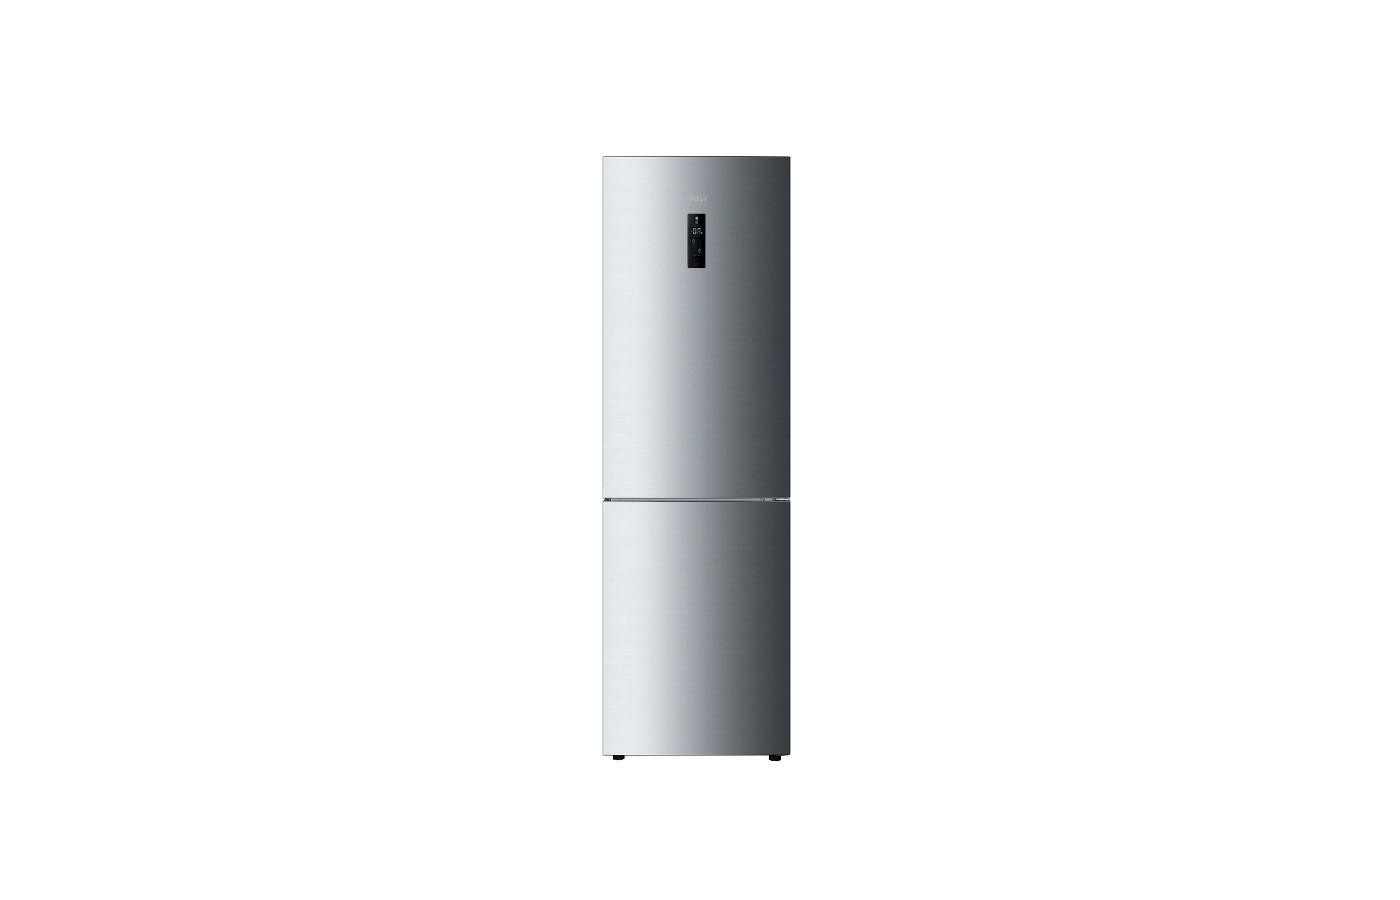 Haier c2f636c. Холодильник Haier с2f636cfrg. Холодильник Haier c2f636cfrg. Холодильник Haier c2f636cfrg, серебристый. Холодильник Хайер 636.